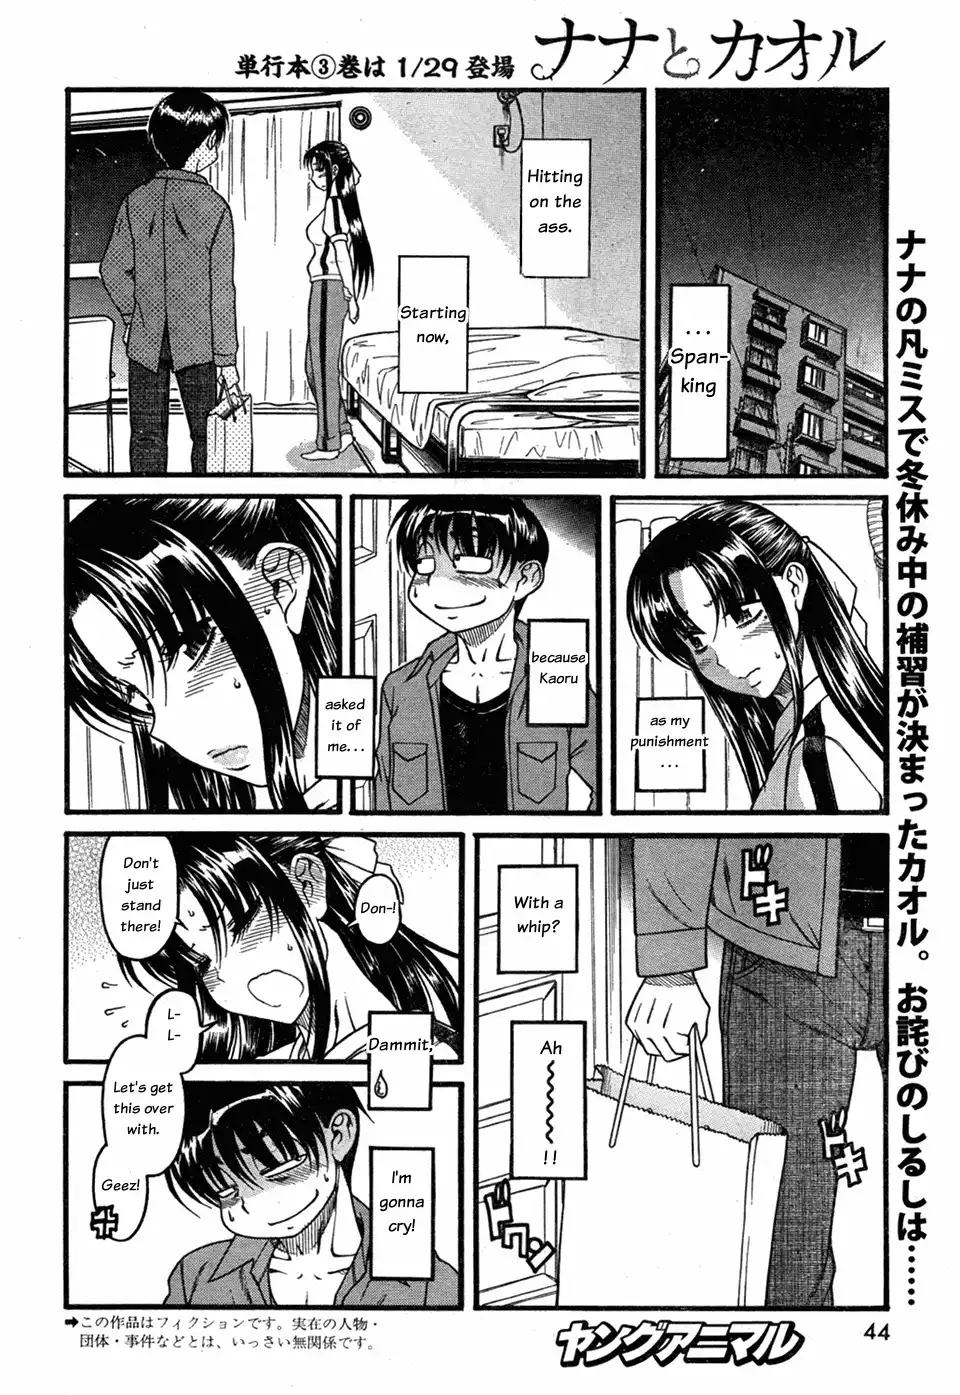 Nana to Kaoru - Chapter 27 Page 2